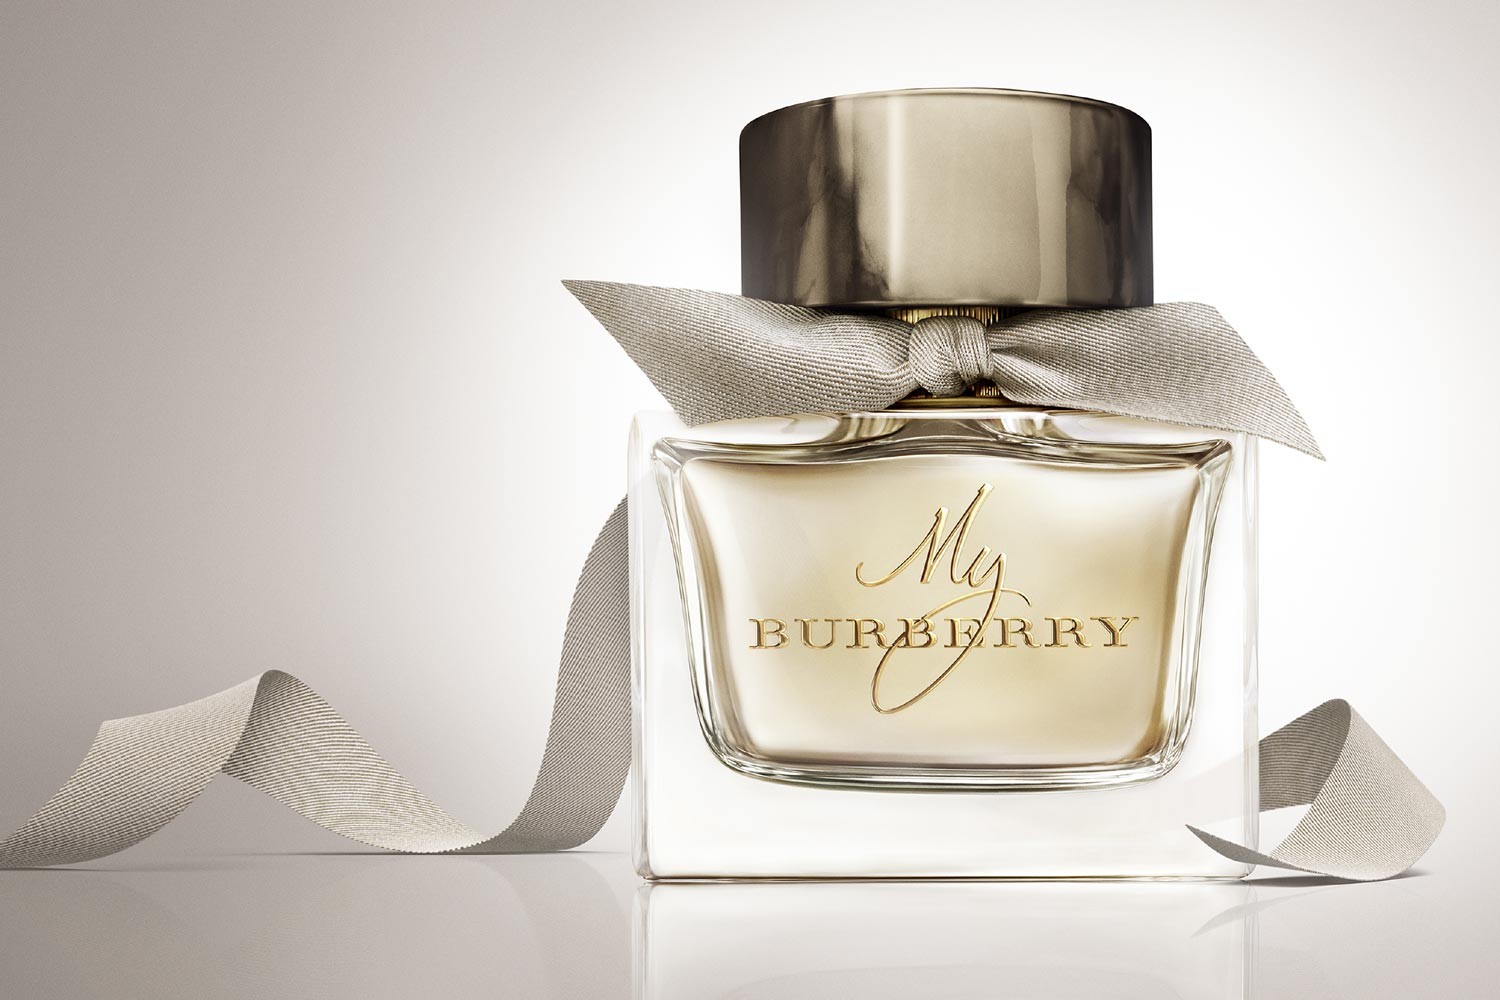 O frasco do novo perfume (Foto: Divulgação)